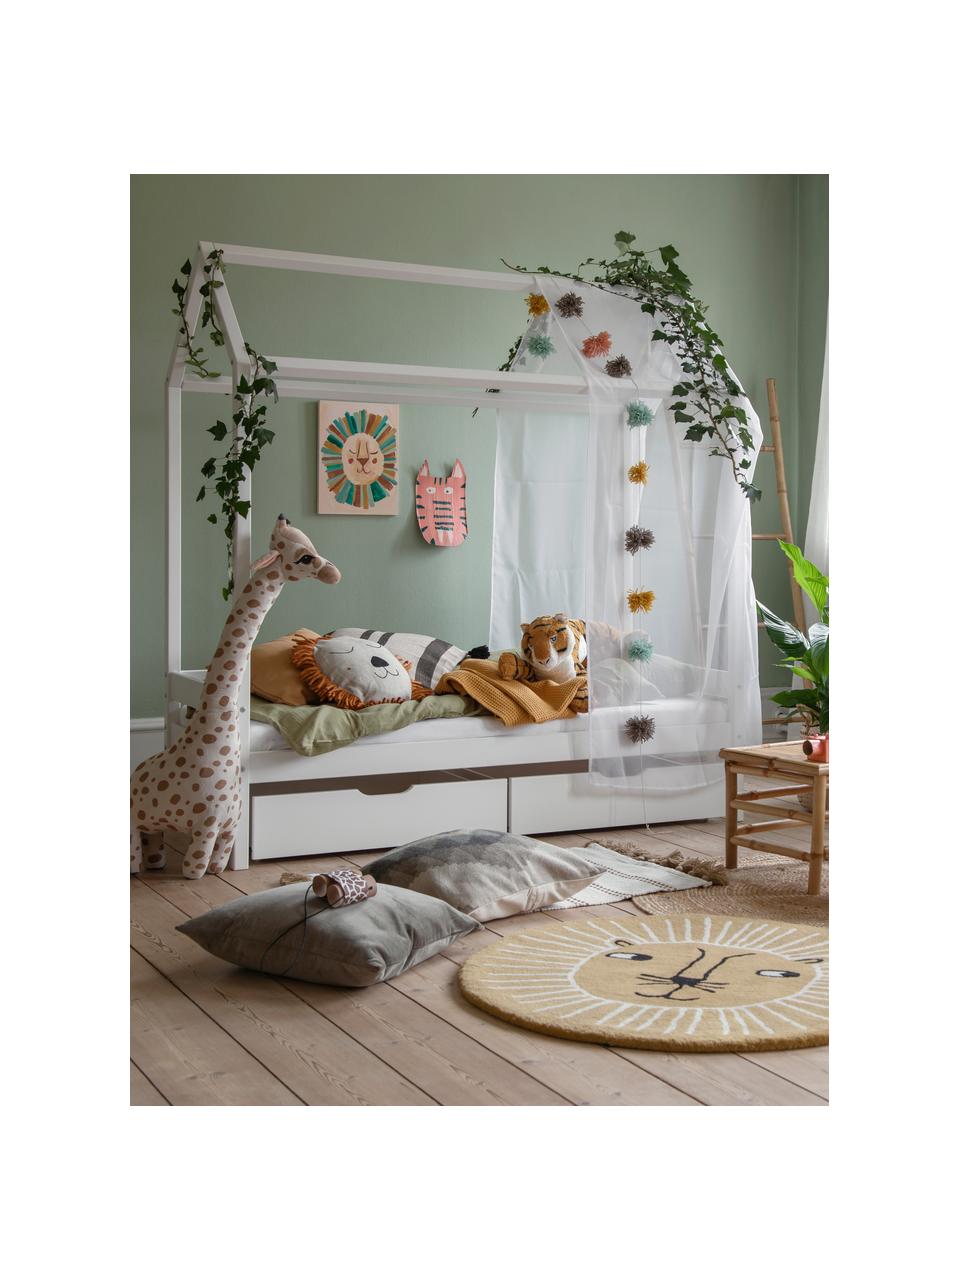 Dětská postel z borovicového dřeva Eco Comfort, 70 x 160 cm, Masivní borovicové dřevo, certifikace FSC, překližka, Borovicové dřevo, lakované bílou barvou, Š 70 cm, D 160 cm